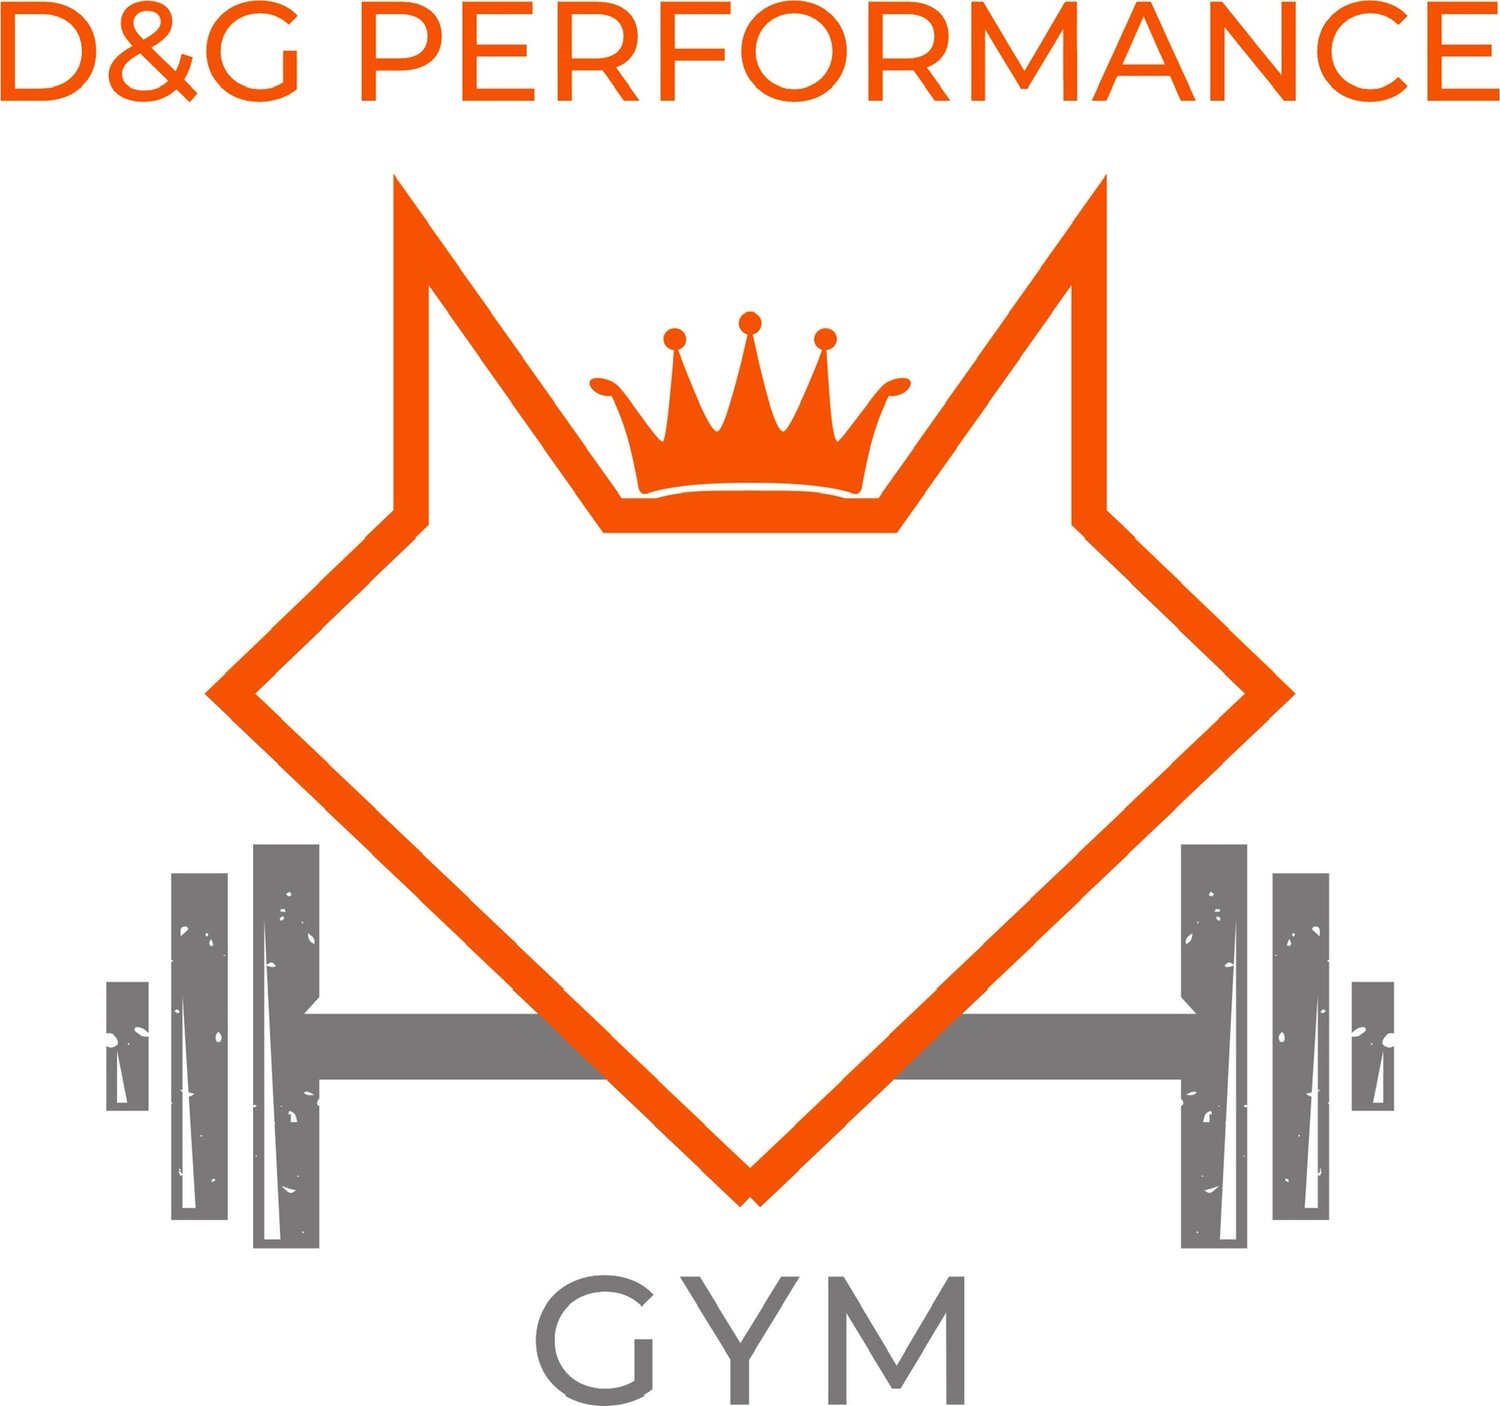 D &amp; G Performance Gym